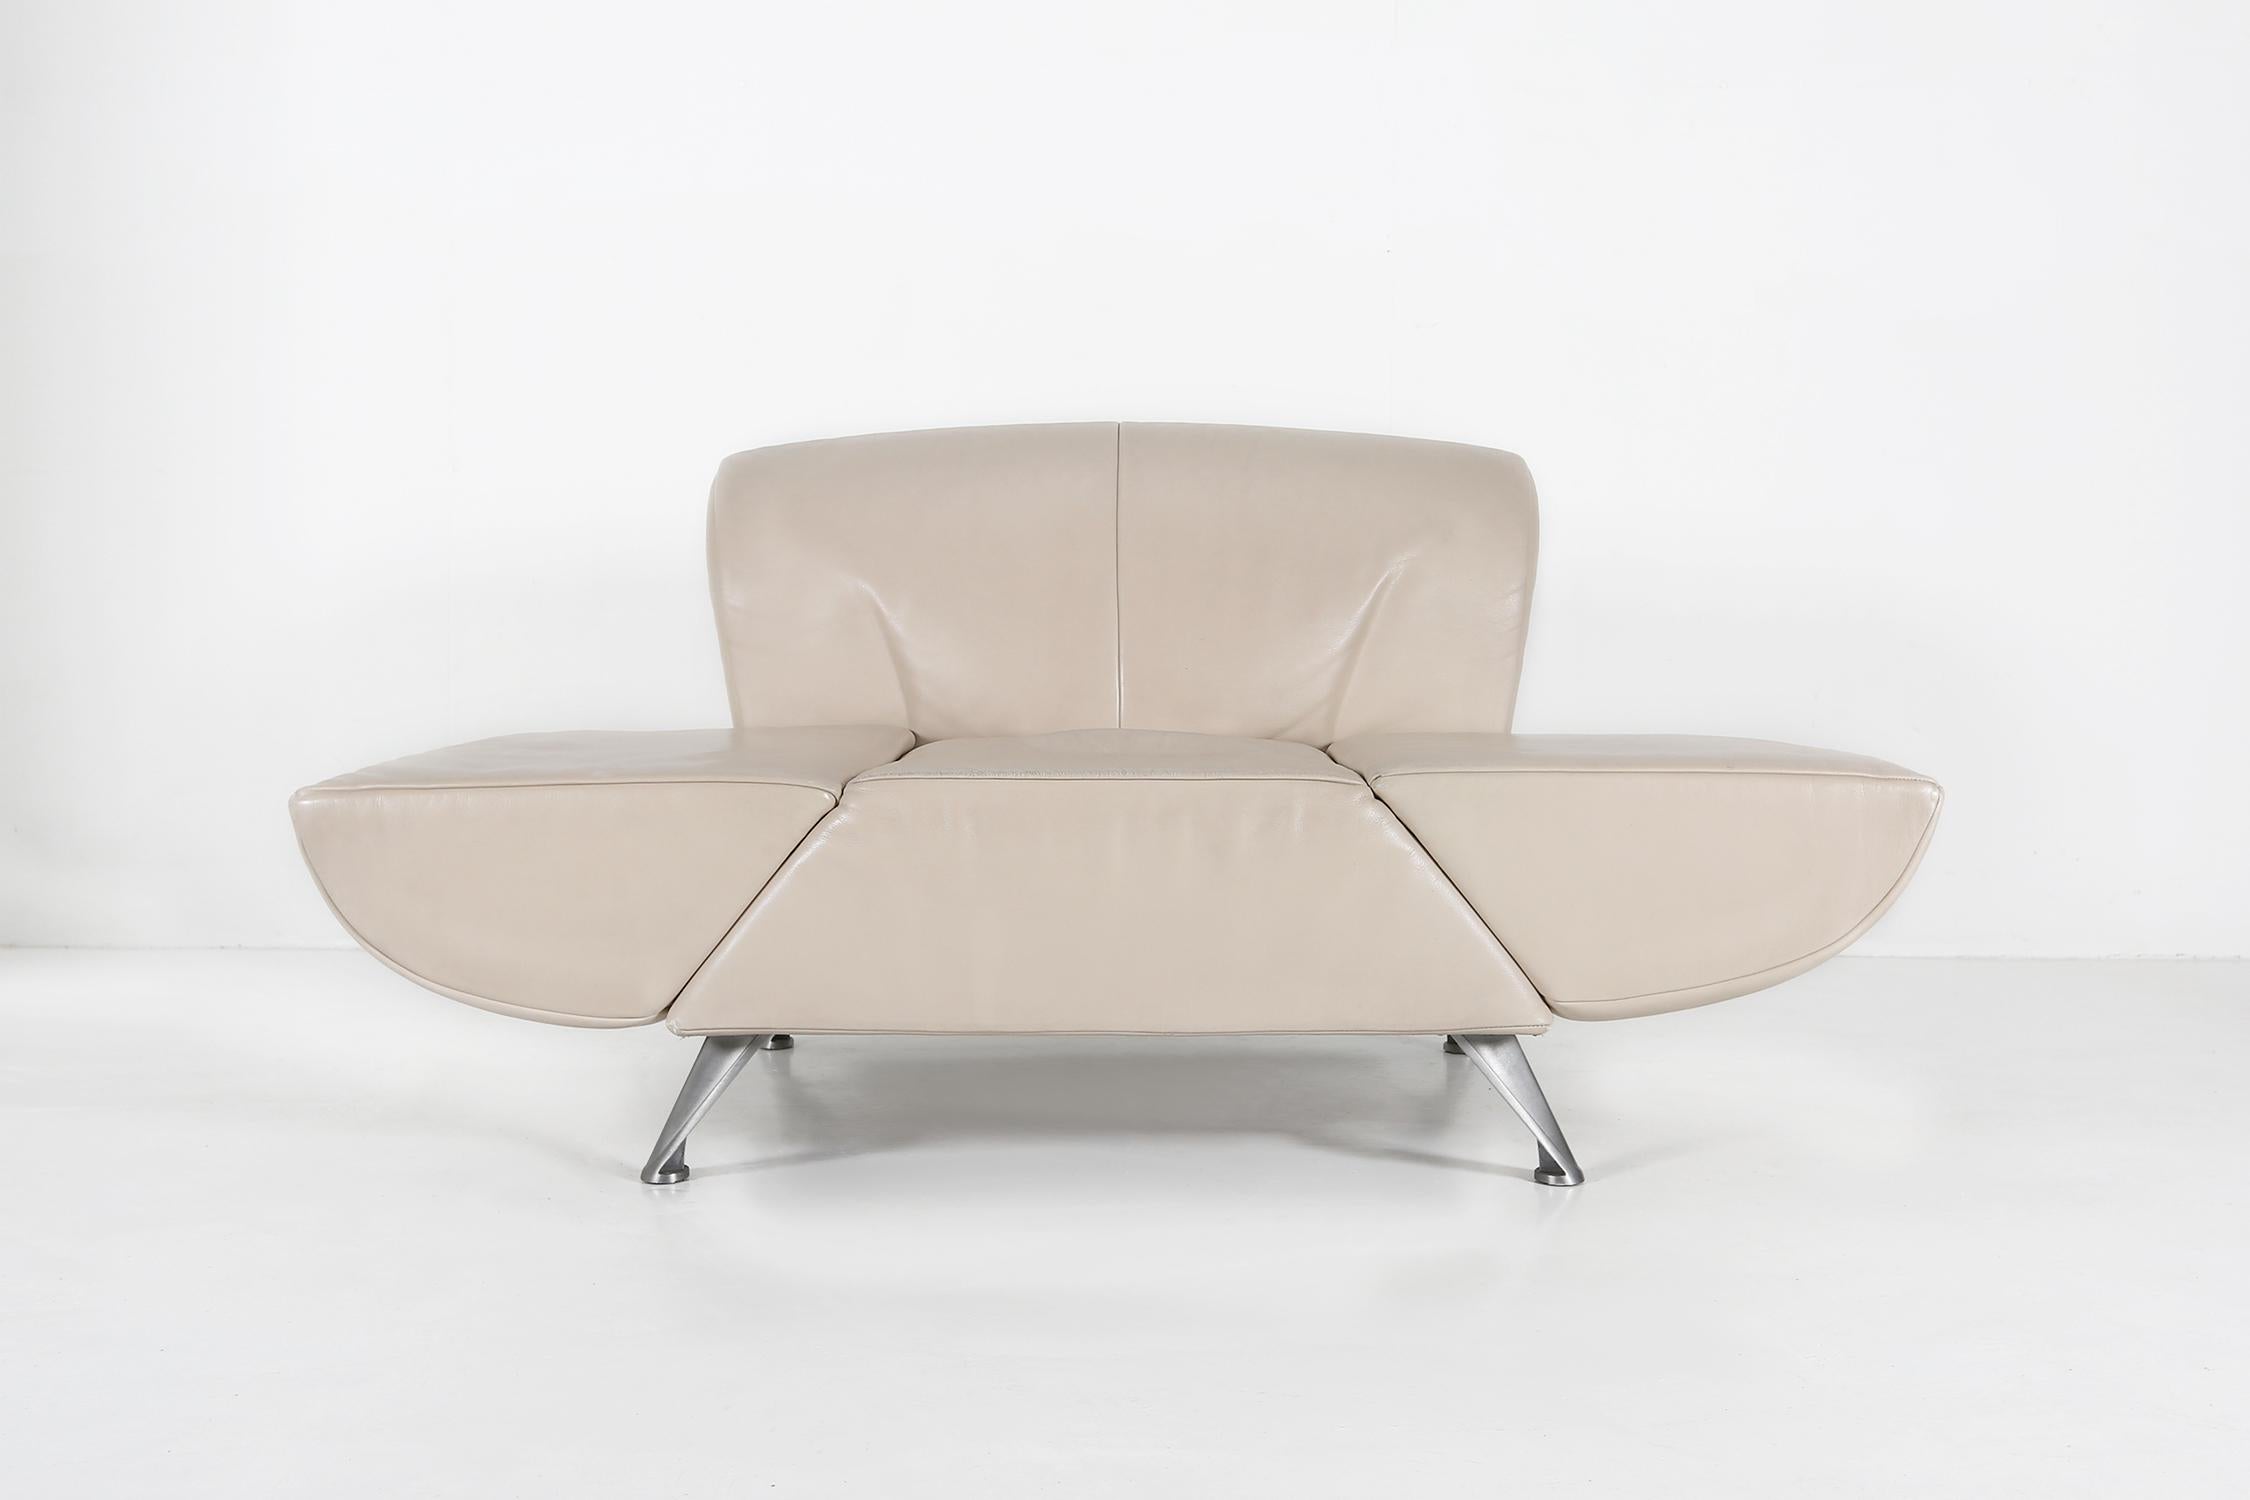 Clubsessel Modell Pacific von der belgischen Marke Jori. Hergestellt aus beige Farbe. Hergestellt um 2000.
Die Armlehne kann heruntergeklappt werden, wodurch das Sofa mehr Platz zum Sitzen bietet.

Maße: Breite: 104-155 cm
Sitzhöhe: 40 cm.